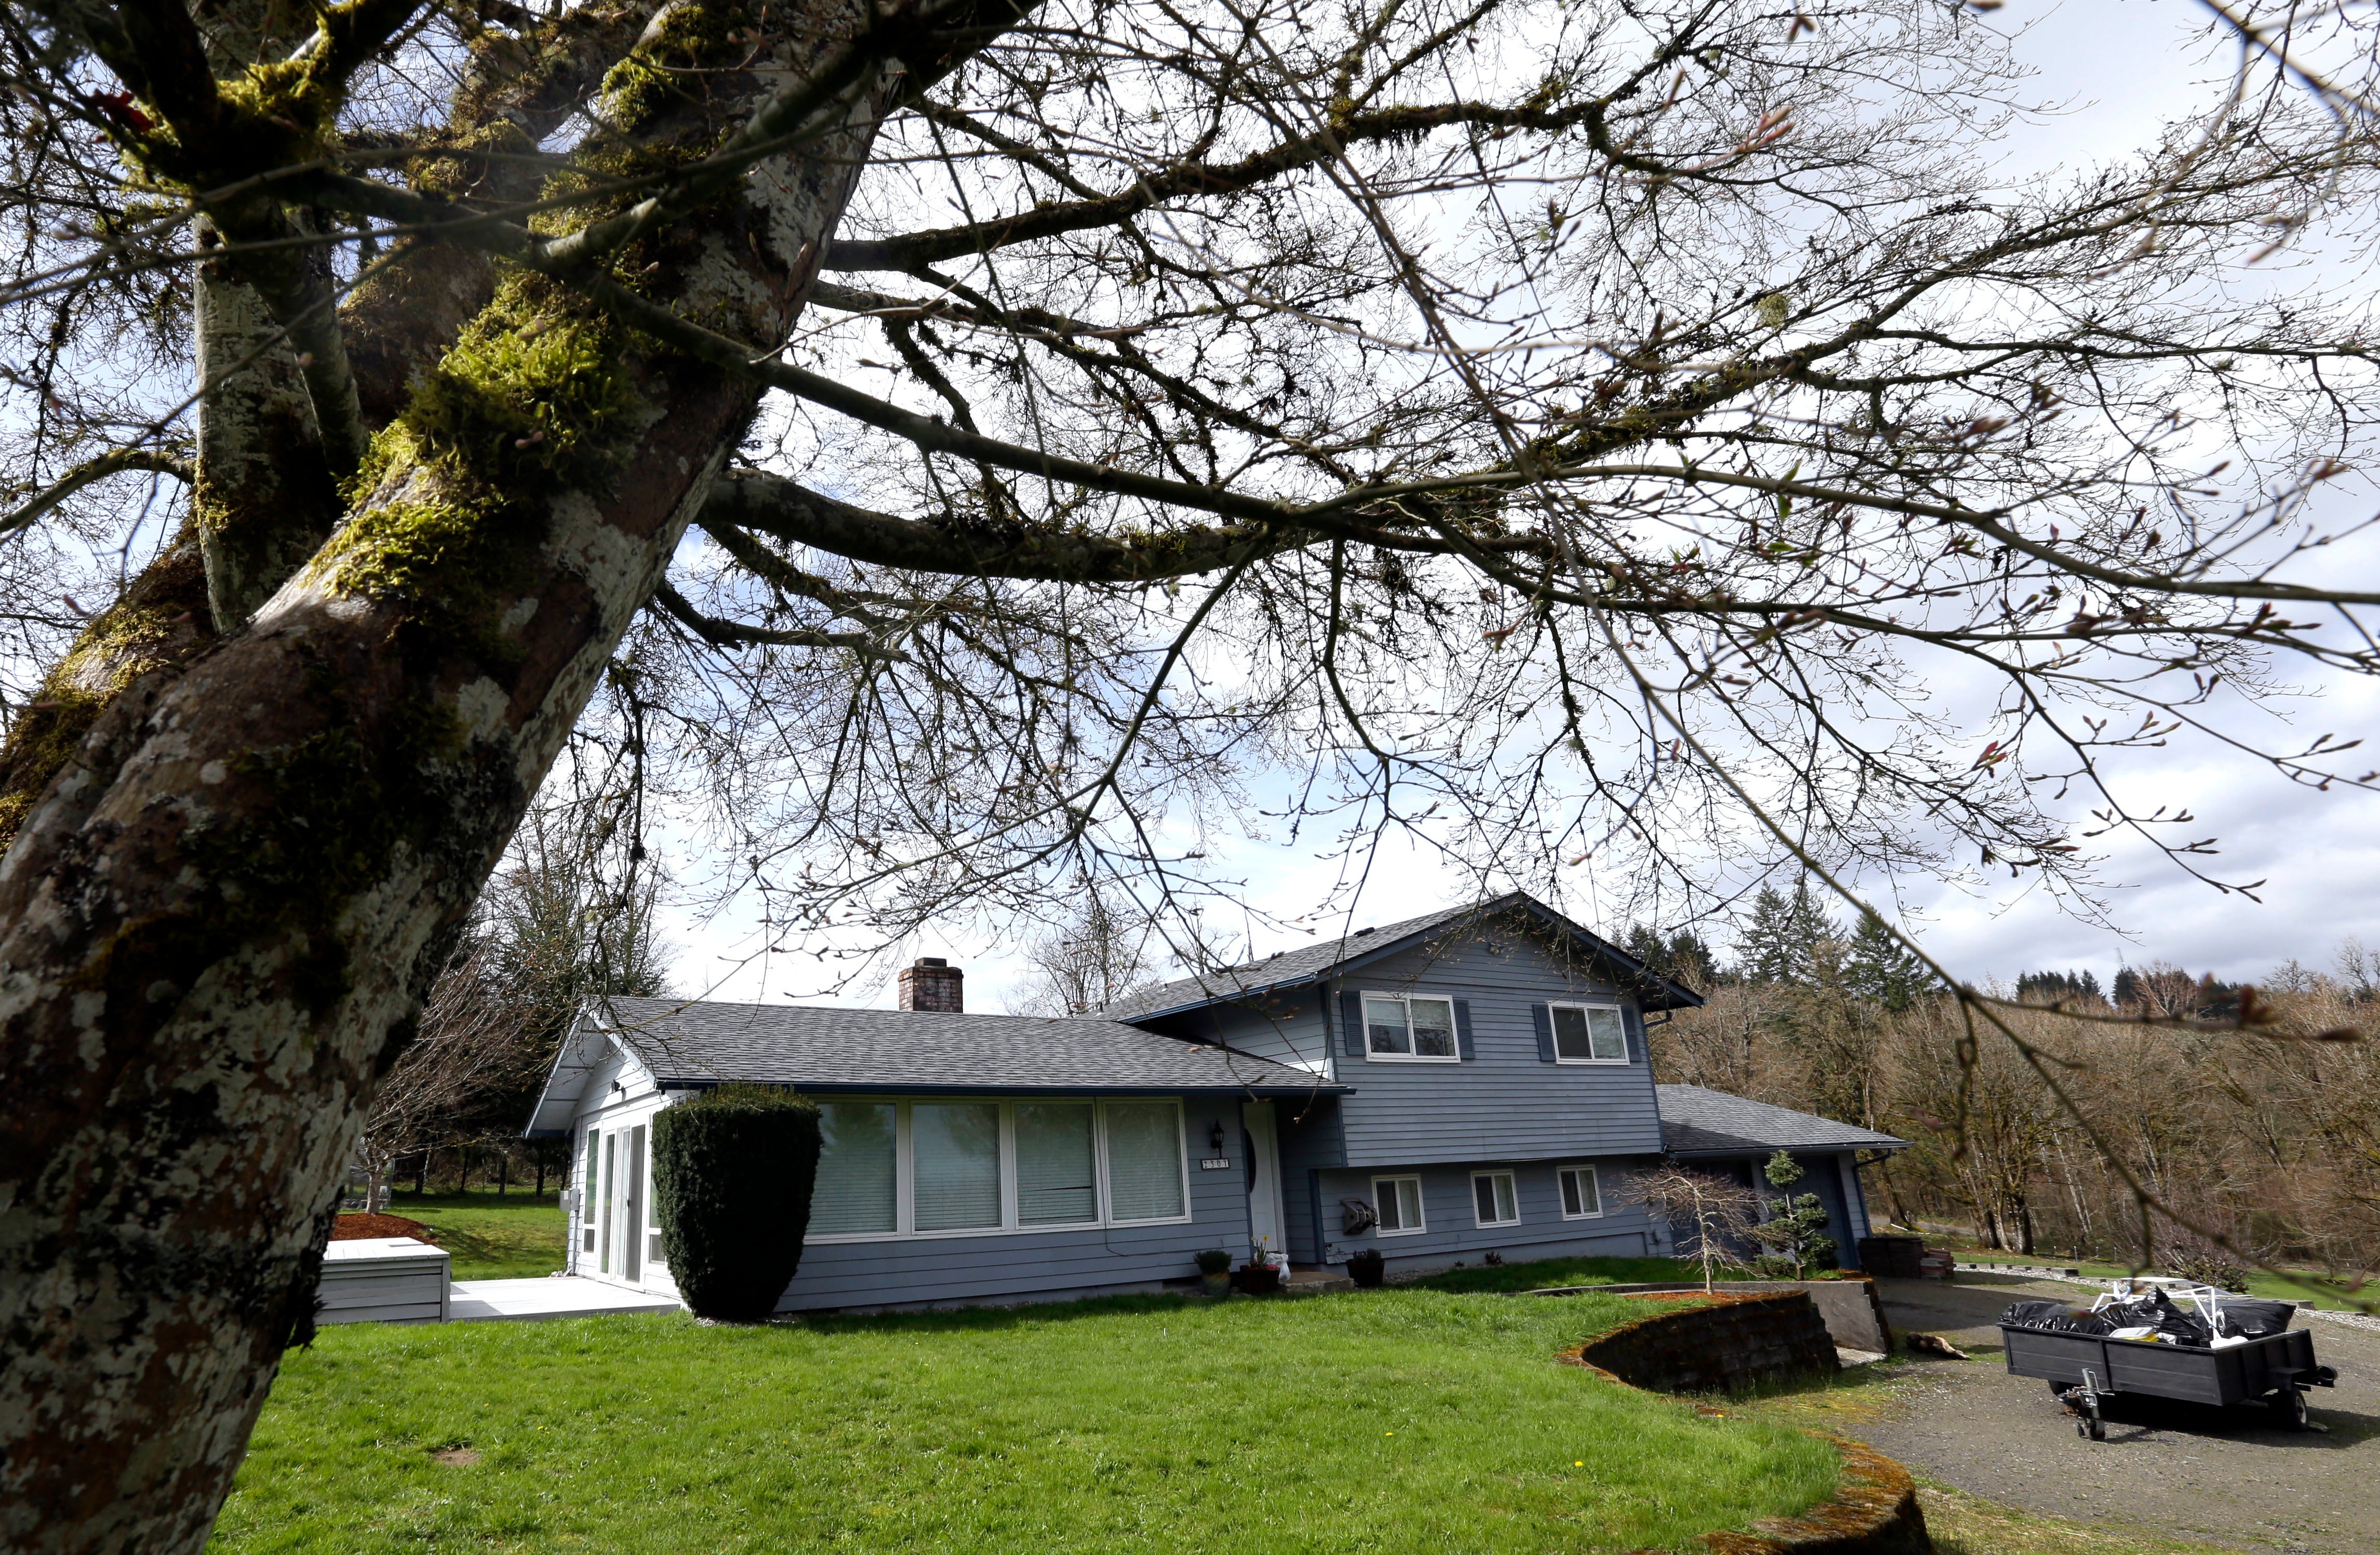 La familia Hart family viivó en esta casa de dos pisos con un prado cercado en Woodland, Washington. Los vecinos dicen que los niños fueron a su casa para pedir comida y protección contra sus madres